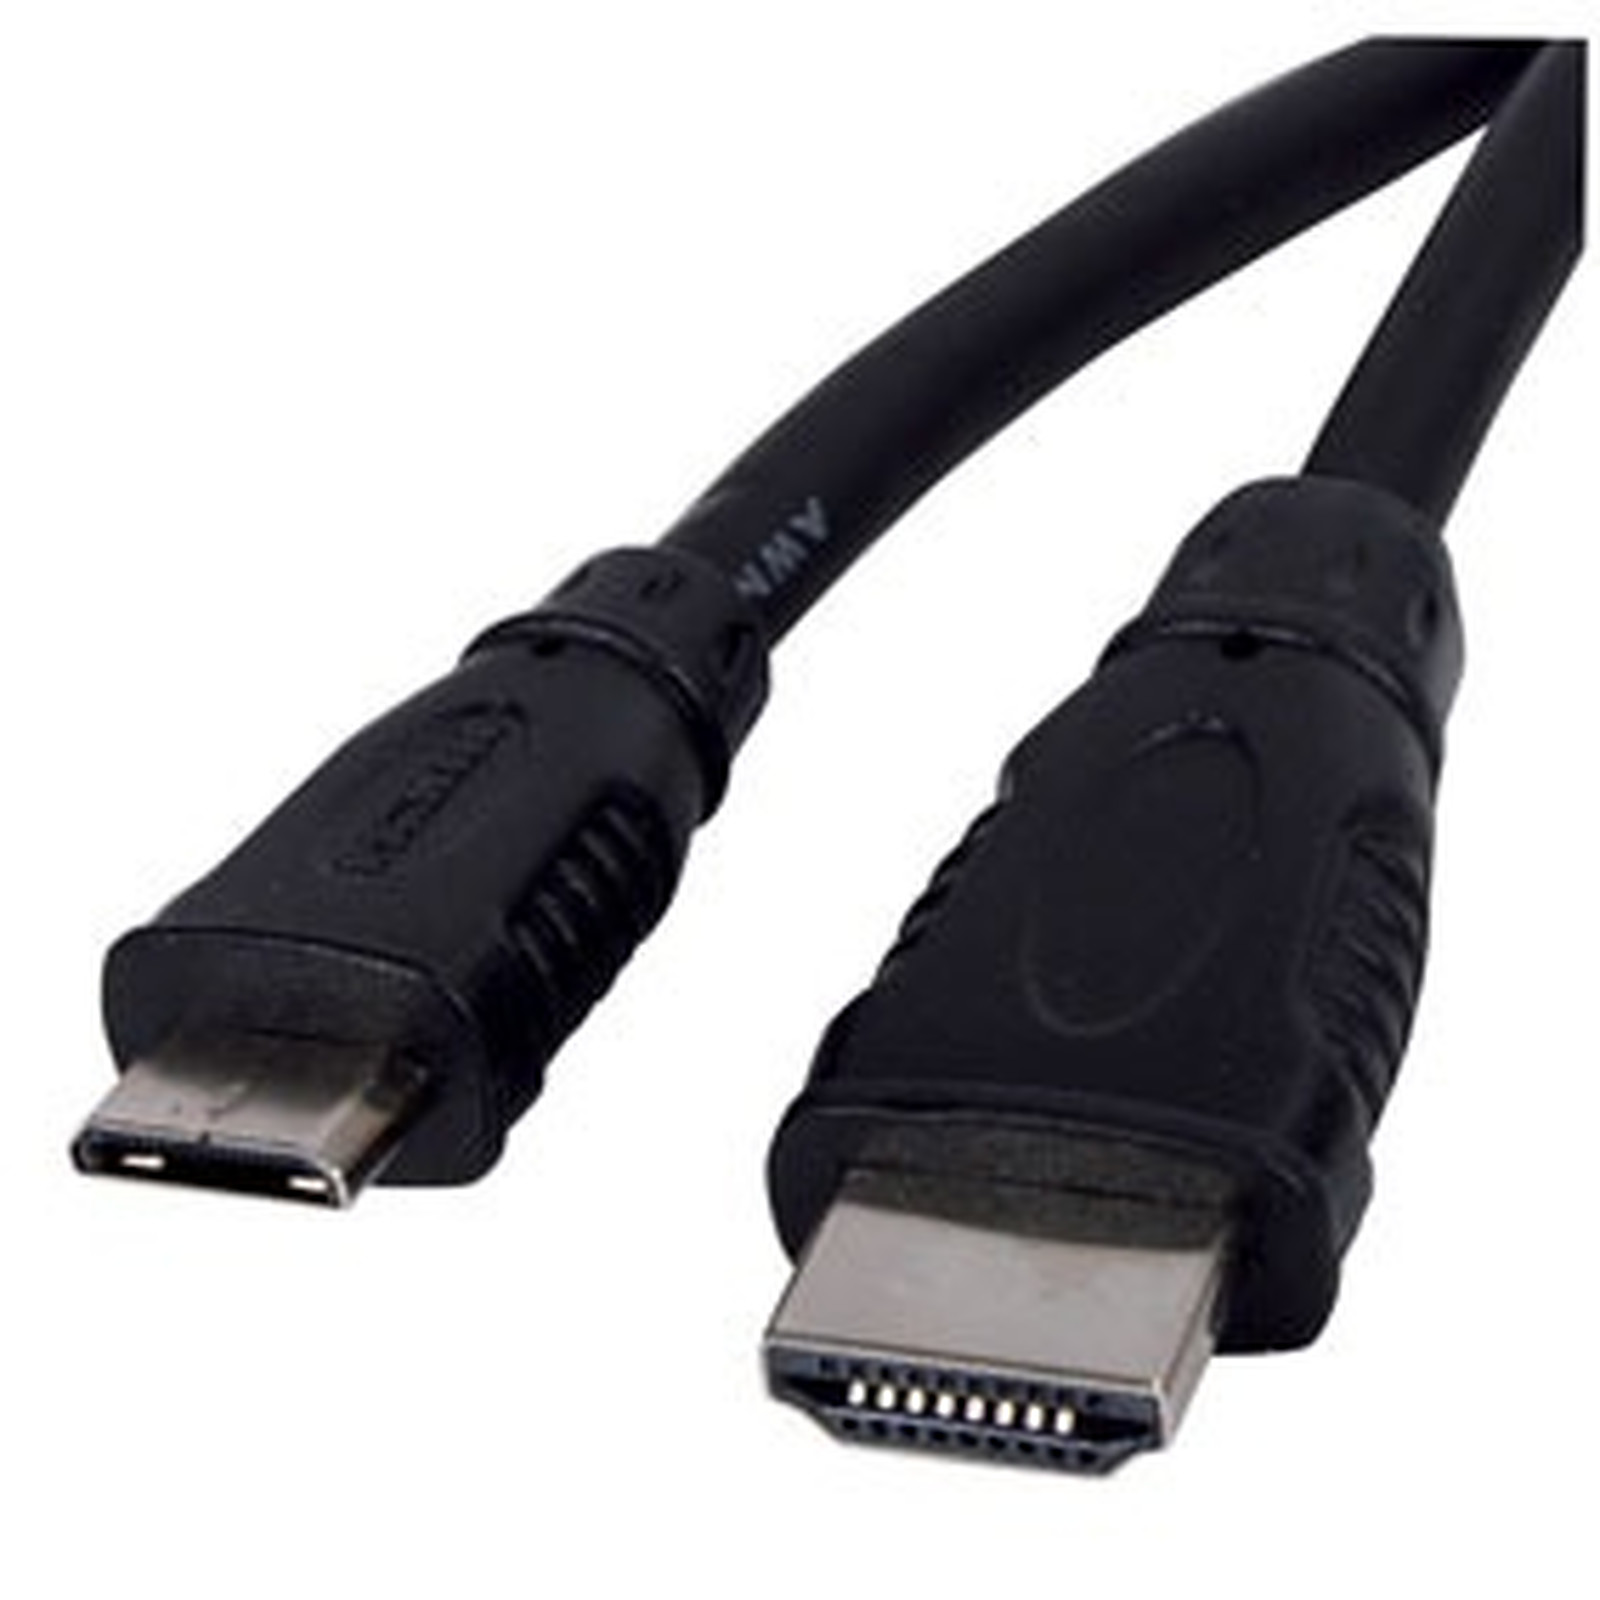 Cable HDMI male / mini HDMI male - (1.5 mètre) - HDMI Generique